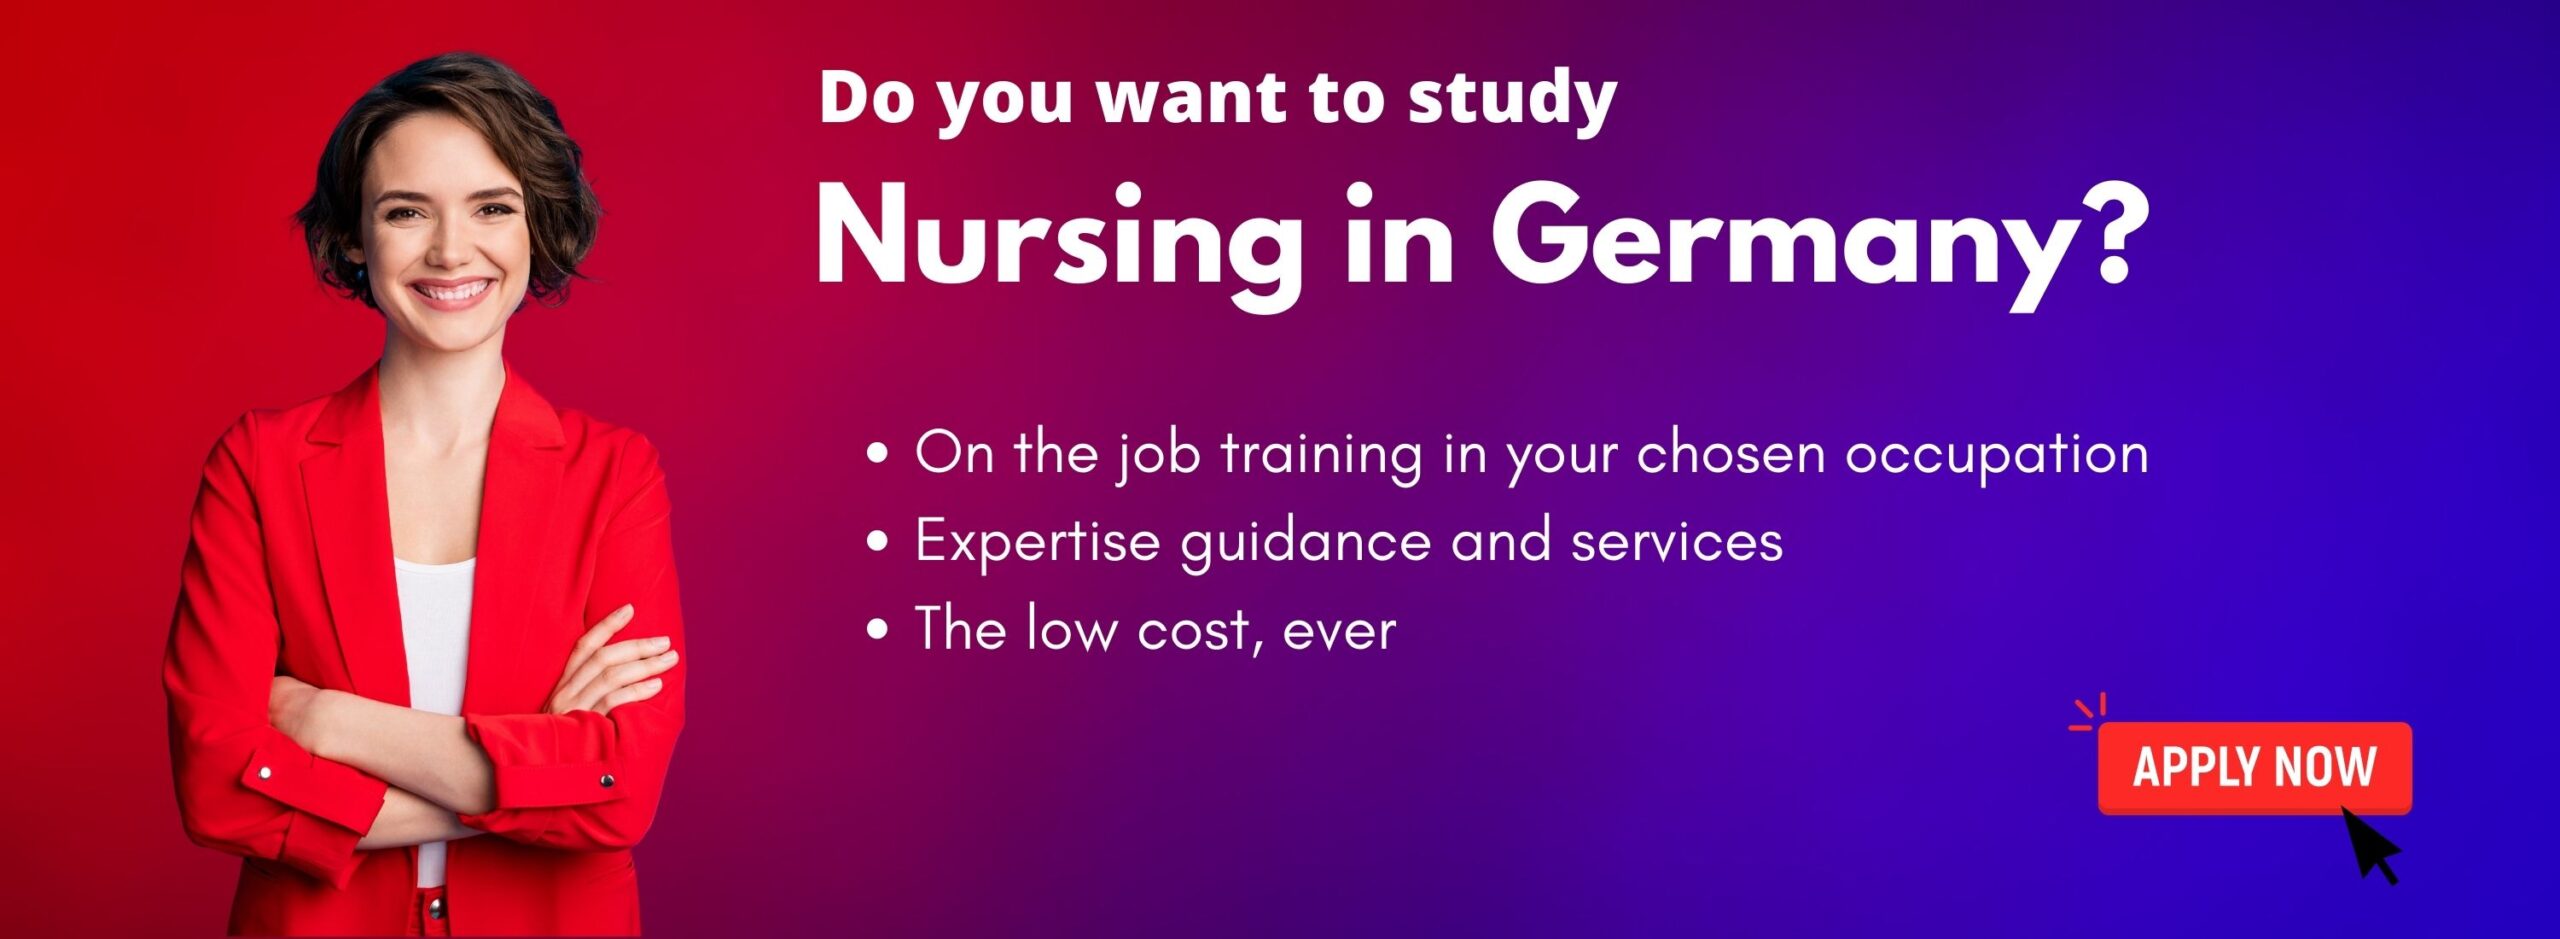 phd nursing in germany